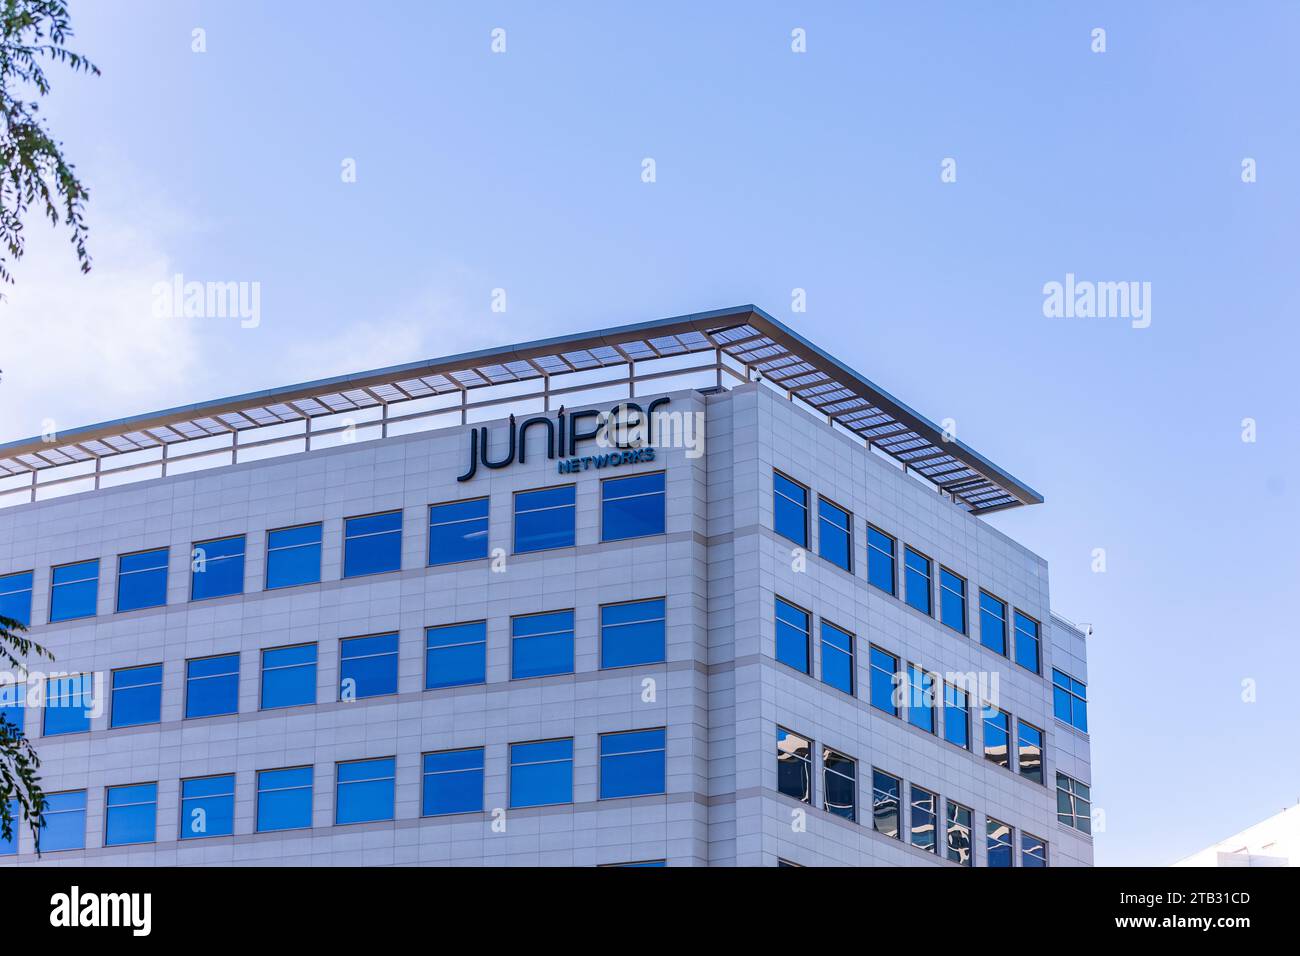 Hauptsitz von Juniper Networks in Sunnyvale, Kalifornien, USA Stockfoto